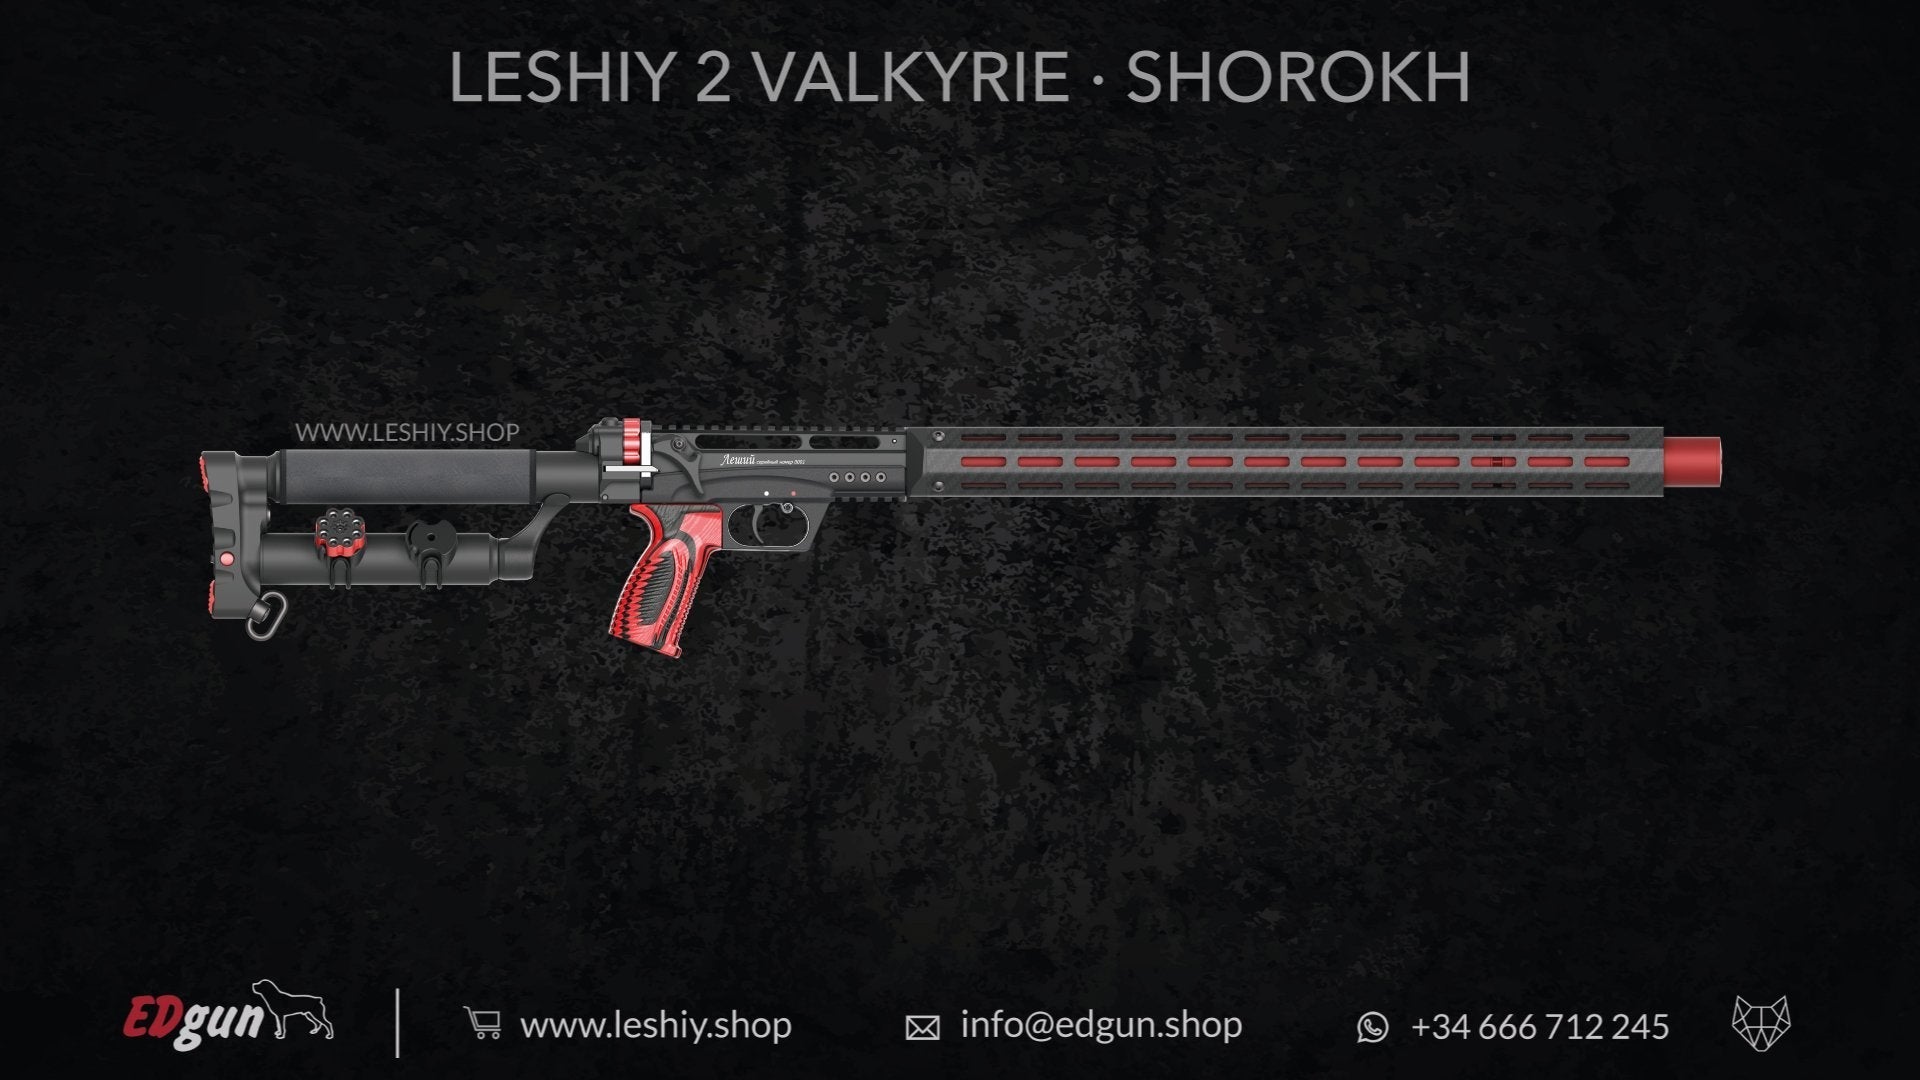 Leshiy 2 Valkyrie · Shorokh